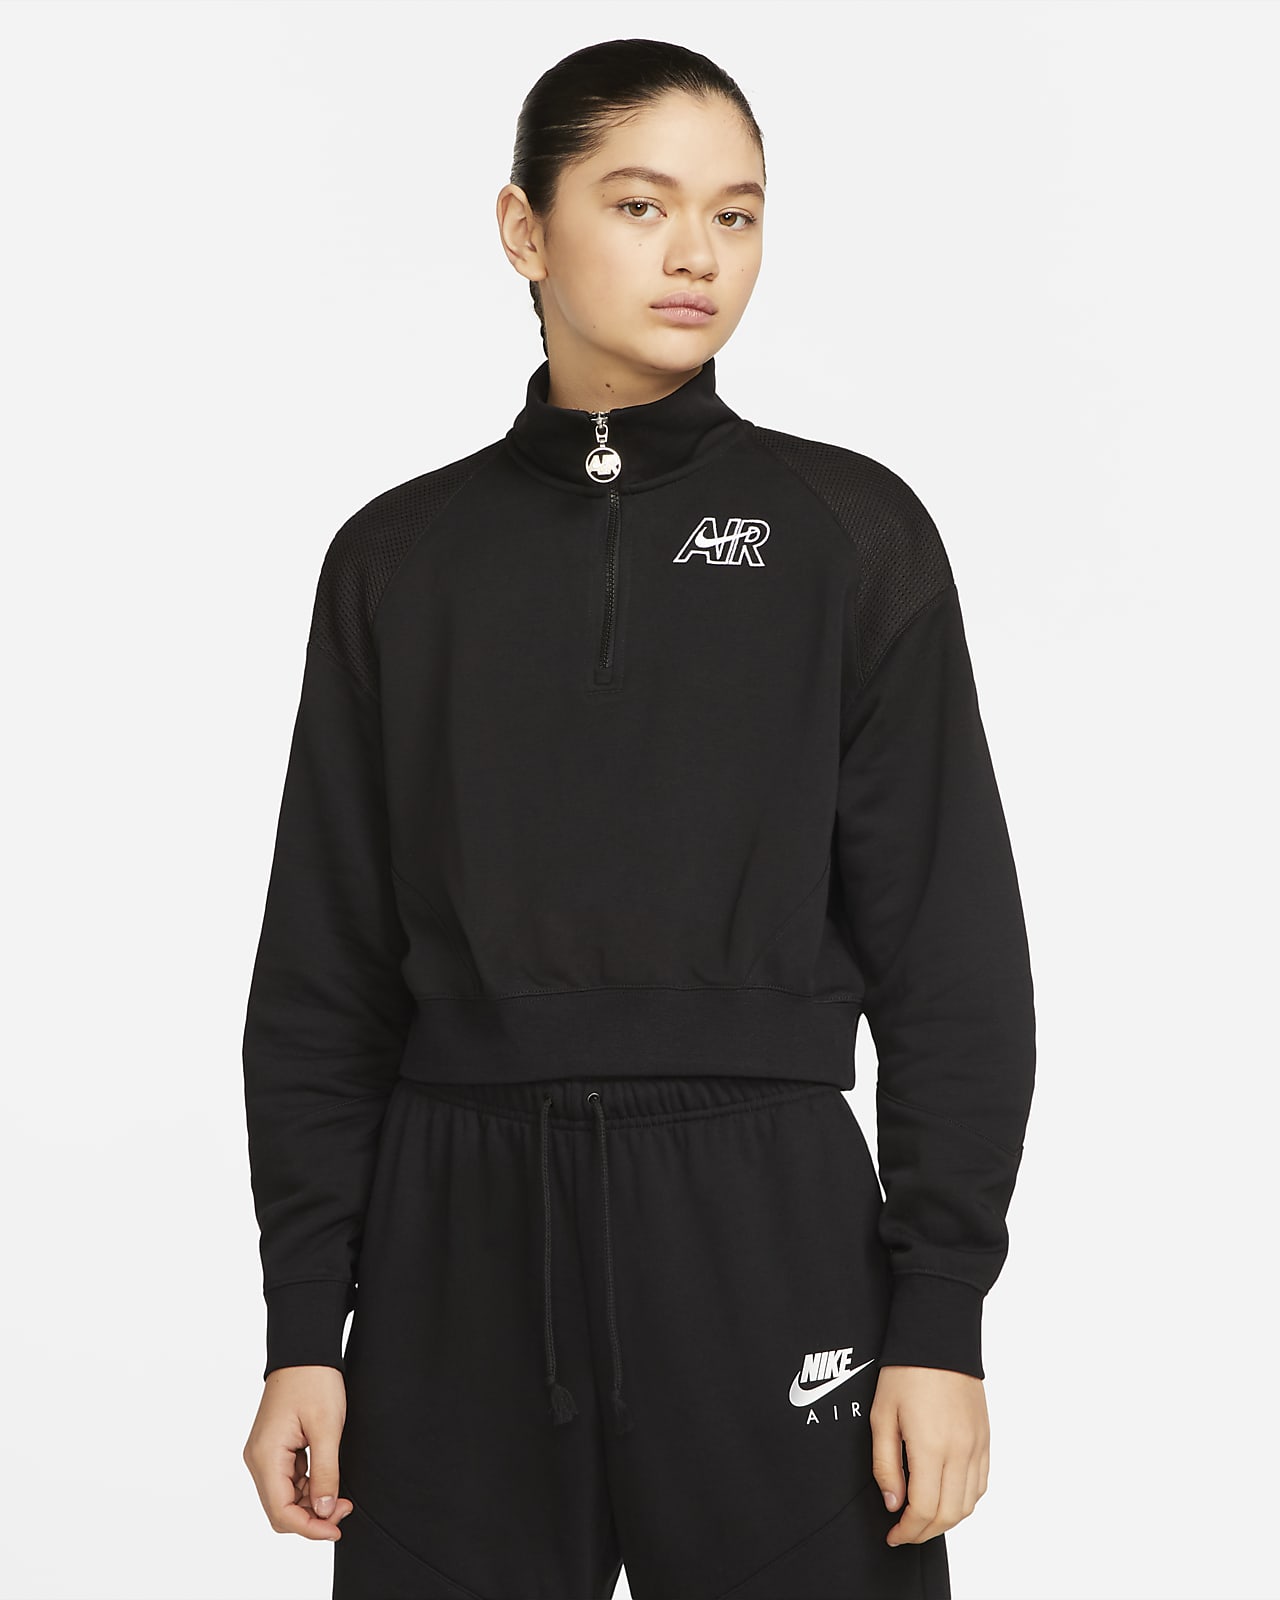 Γυναικεία φλις μπλούζα με φερμουάρ στο 1/4 του μήκους Nike Sportswear Air